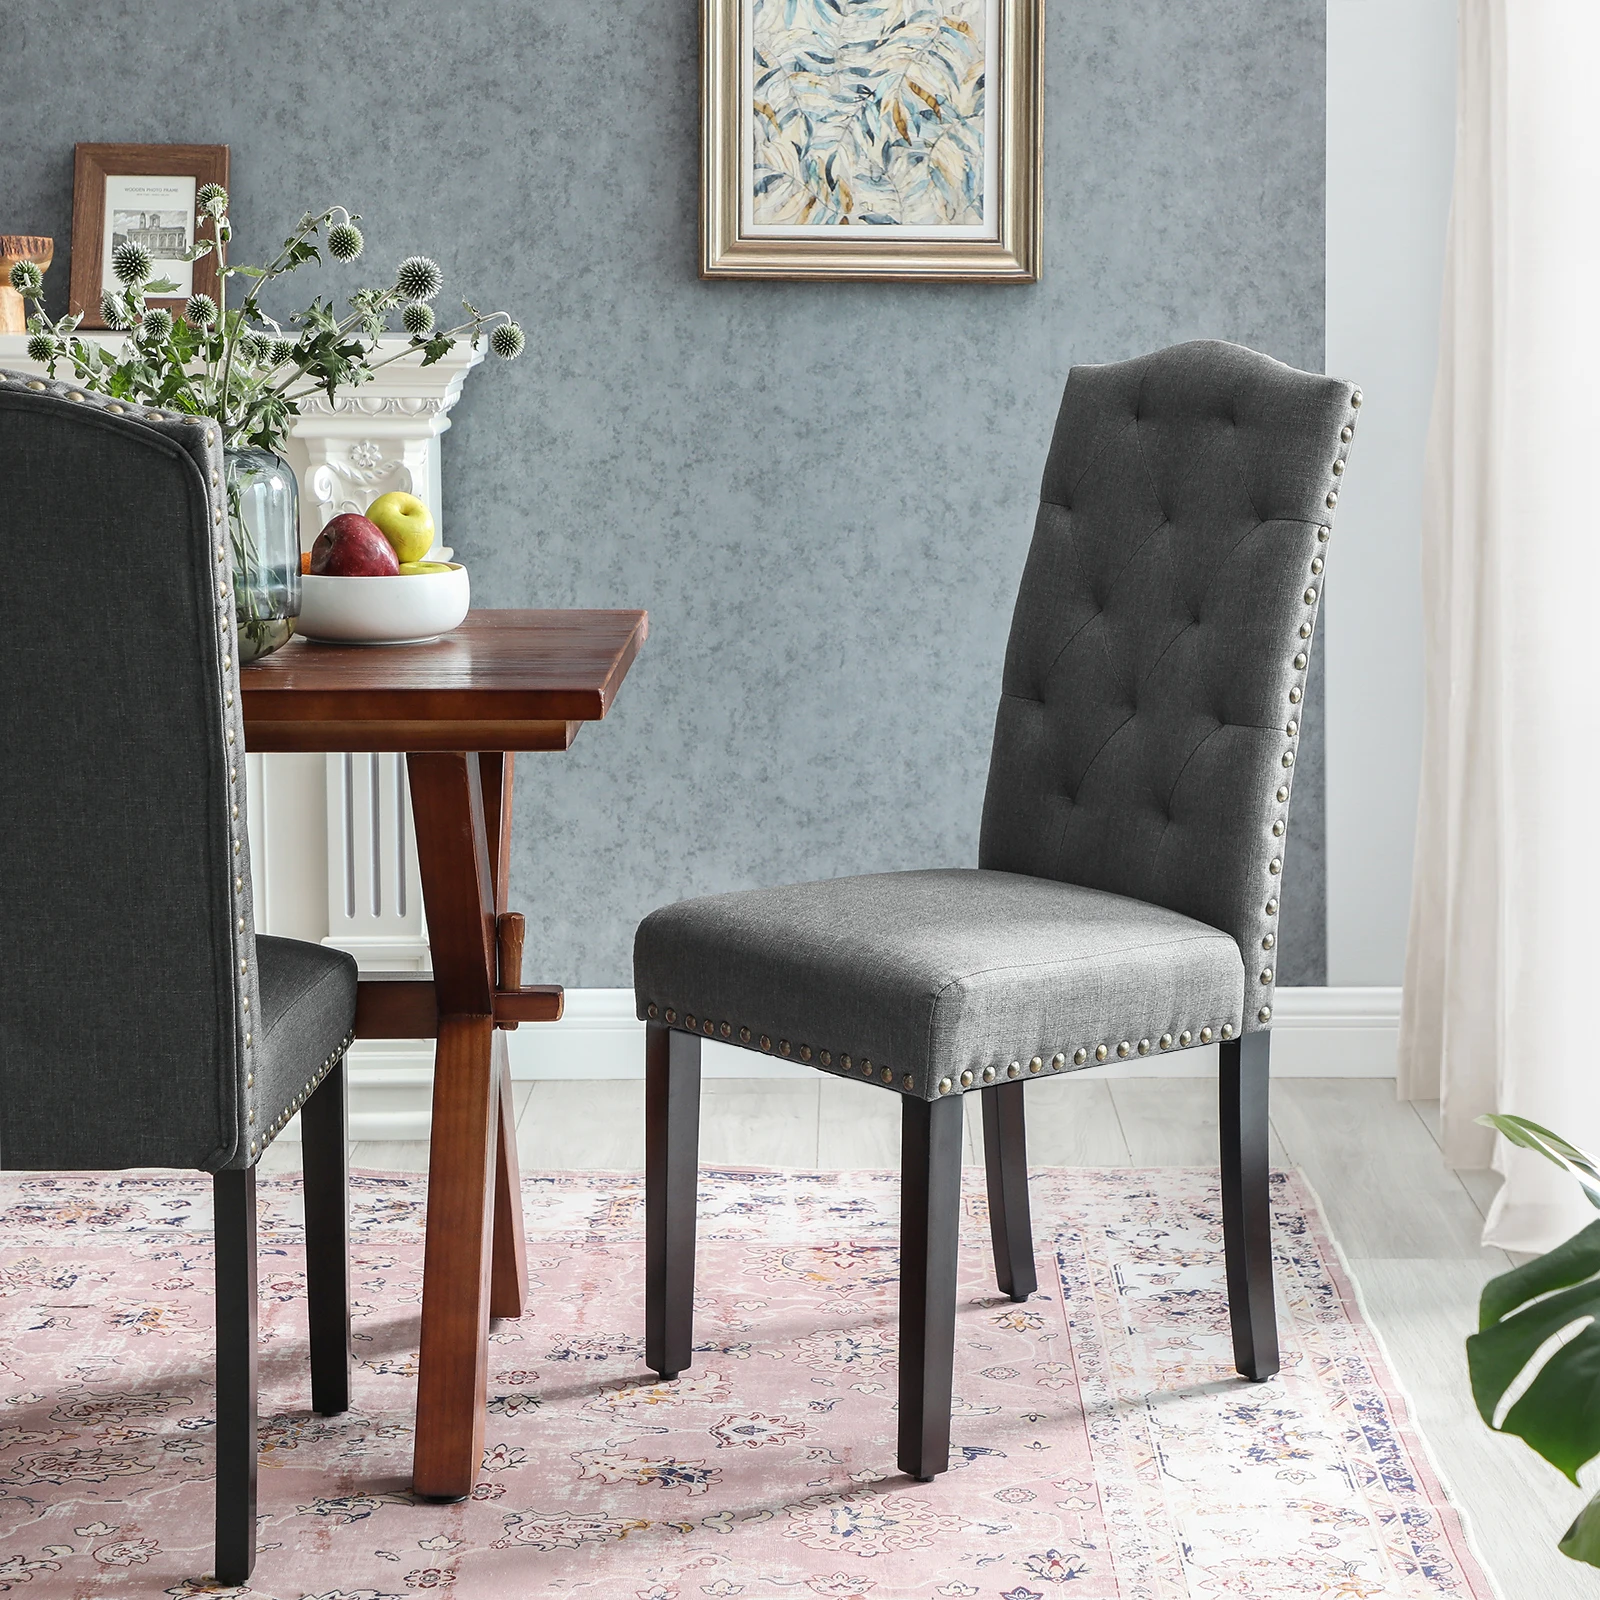 Оптовая продажа скандинавские современные роскошные дизайнерские ресторанные тканевые чехлы с высокими спинками обеденные стулья с сосновыми деревянными ножками